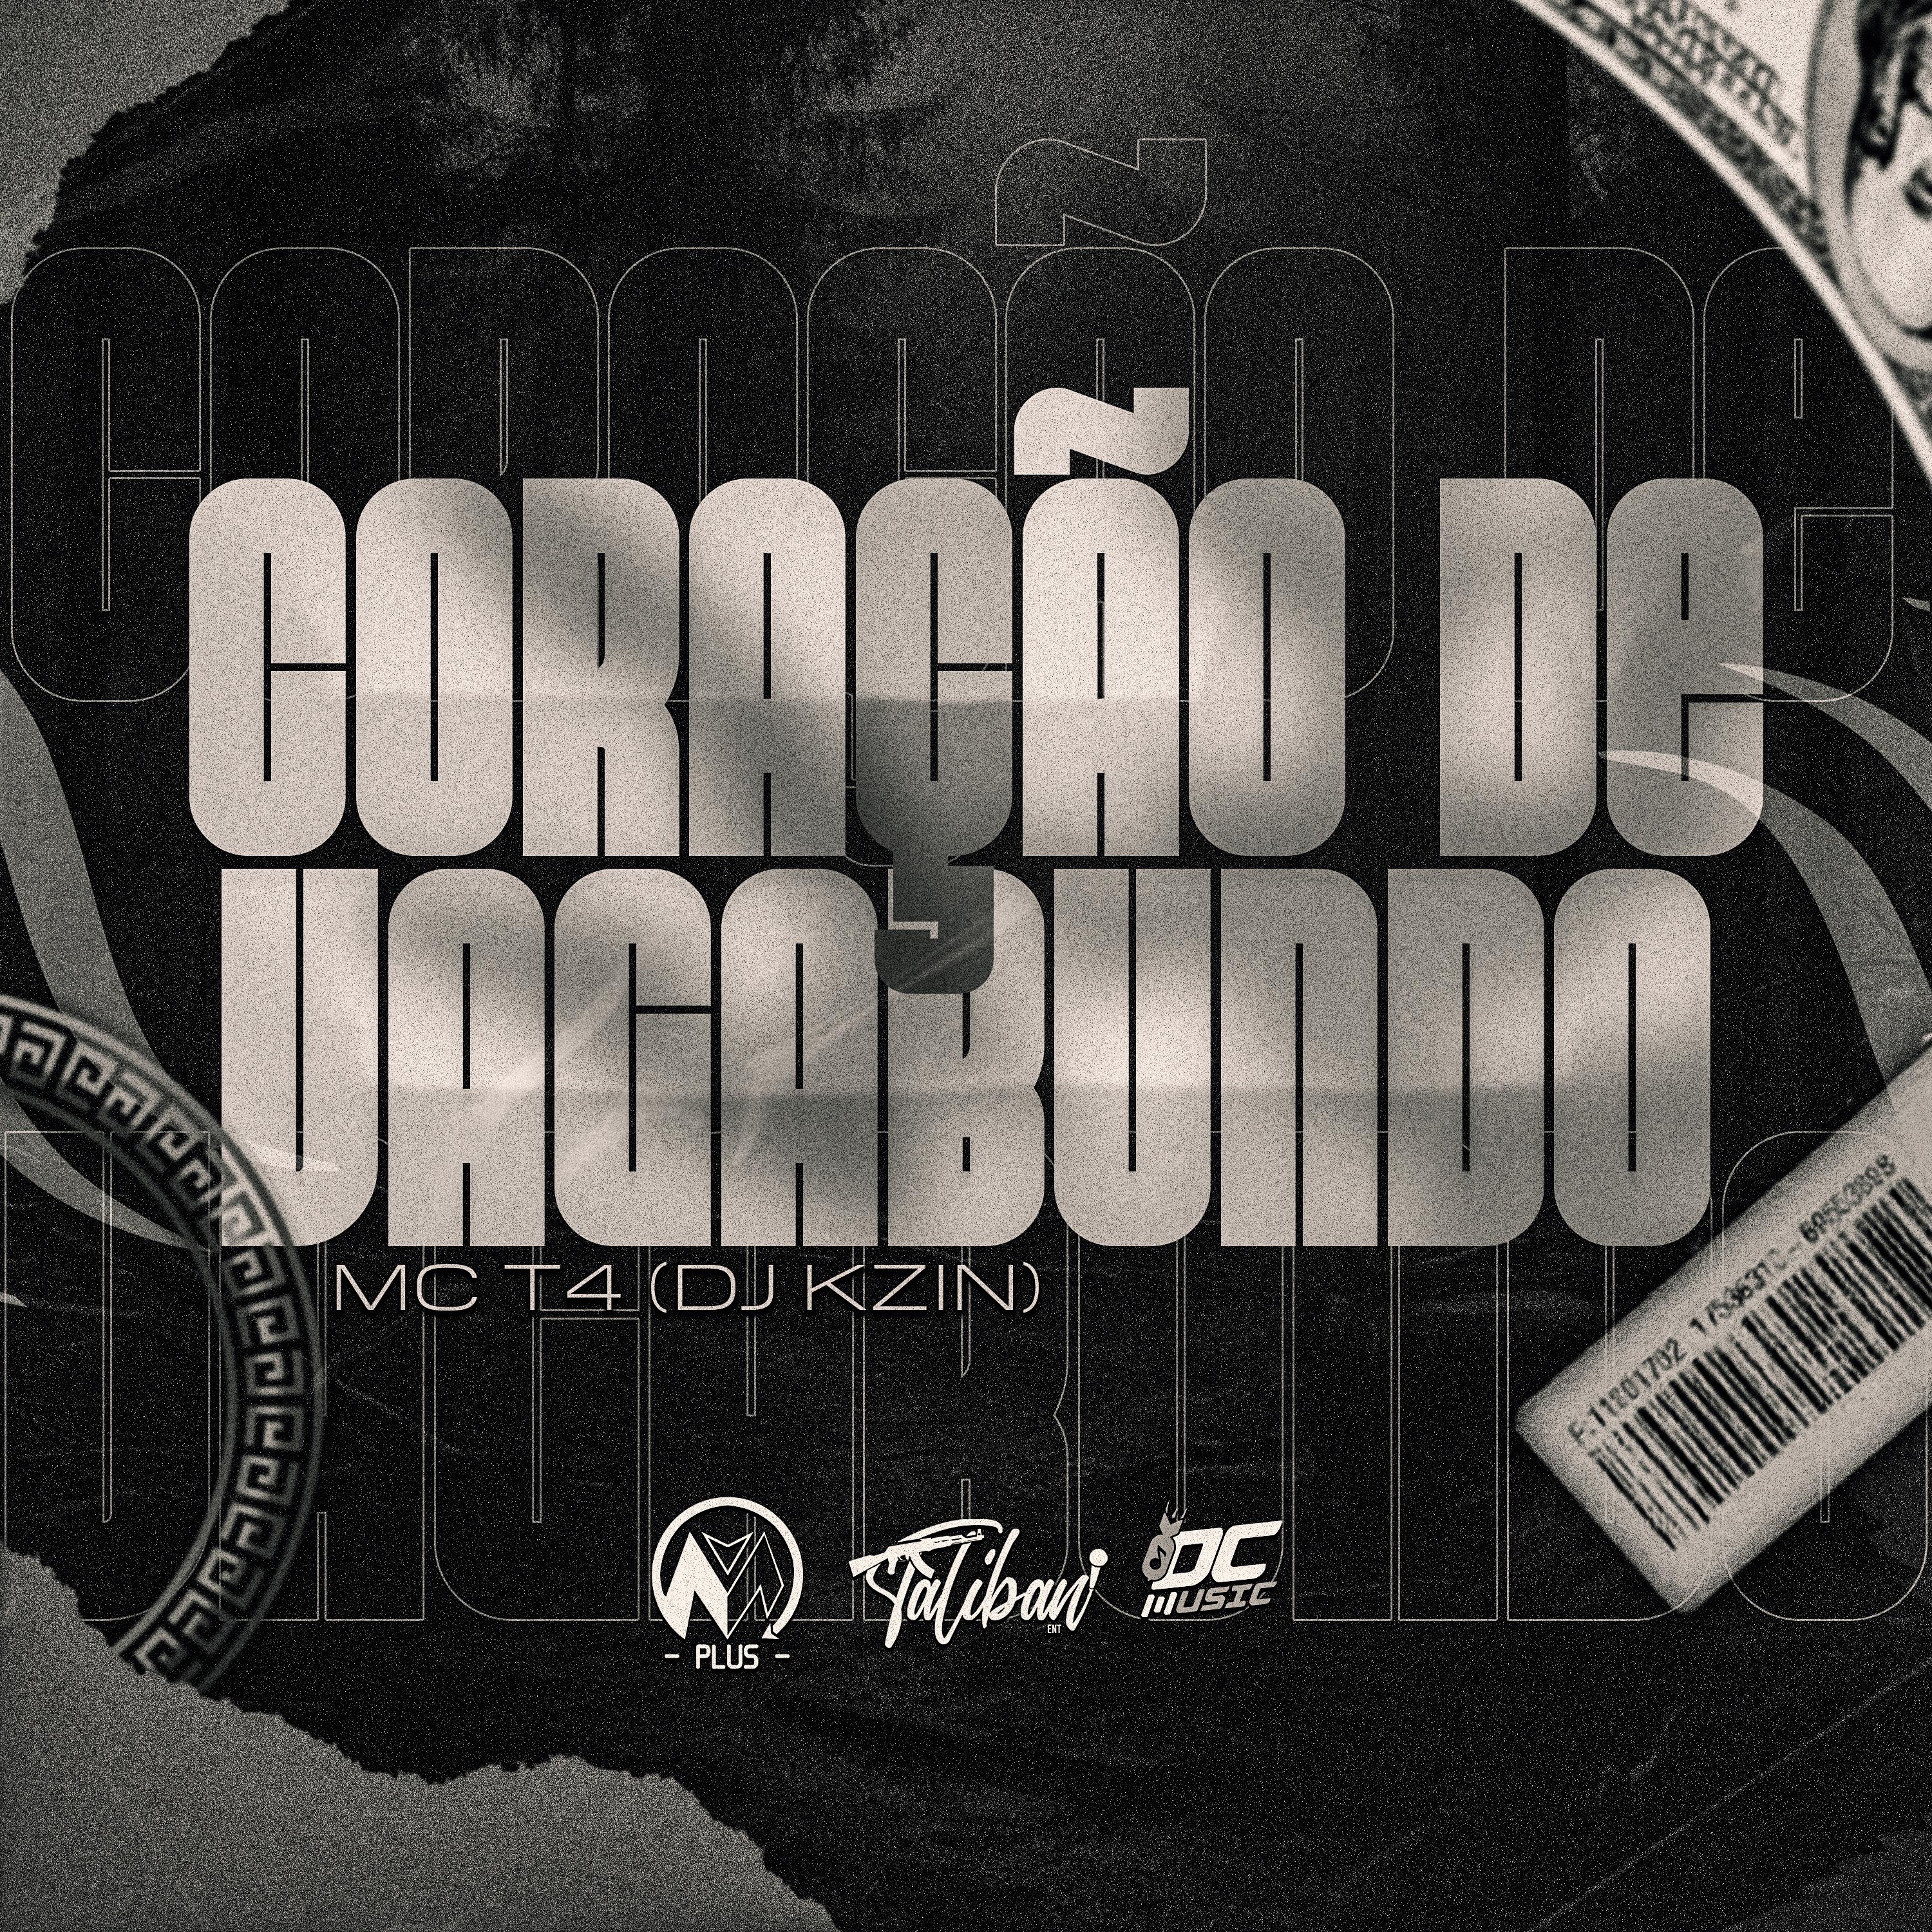 Постер альбома Coração de Vagabundo